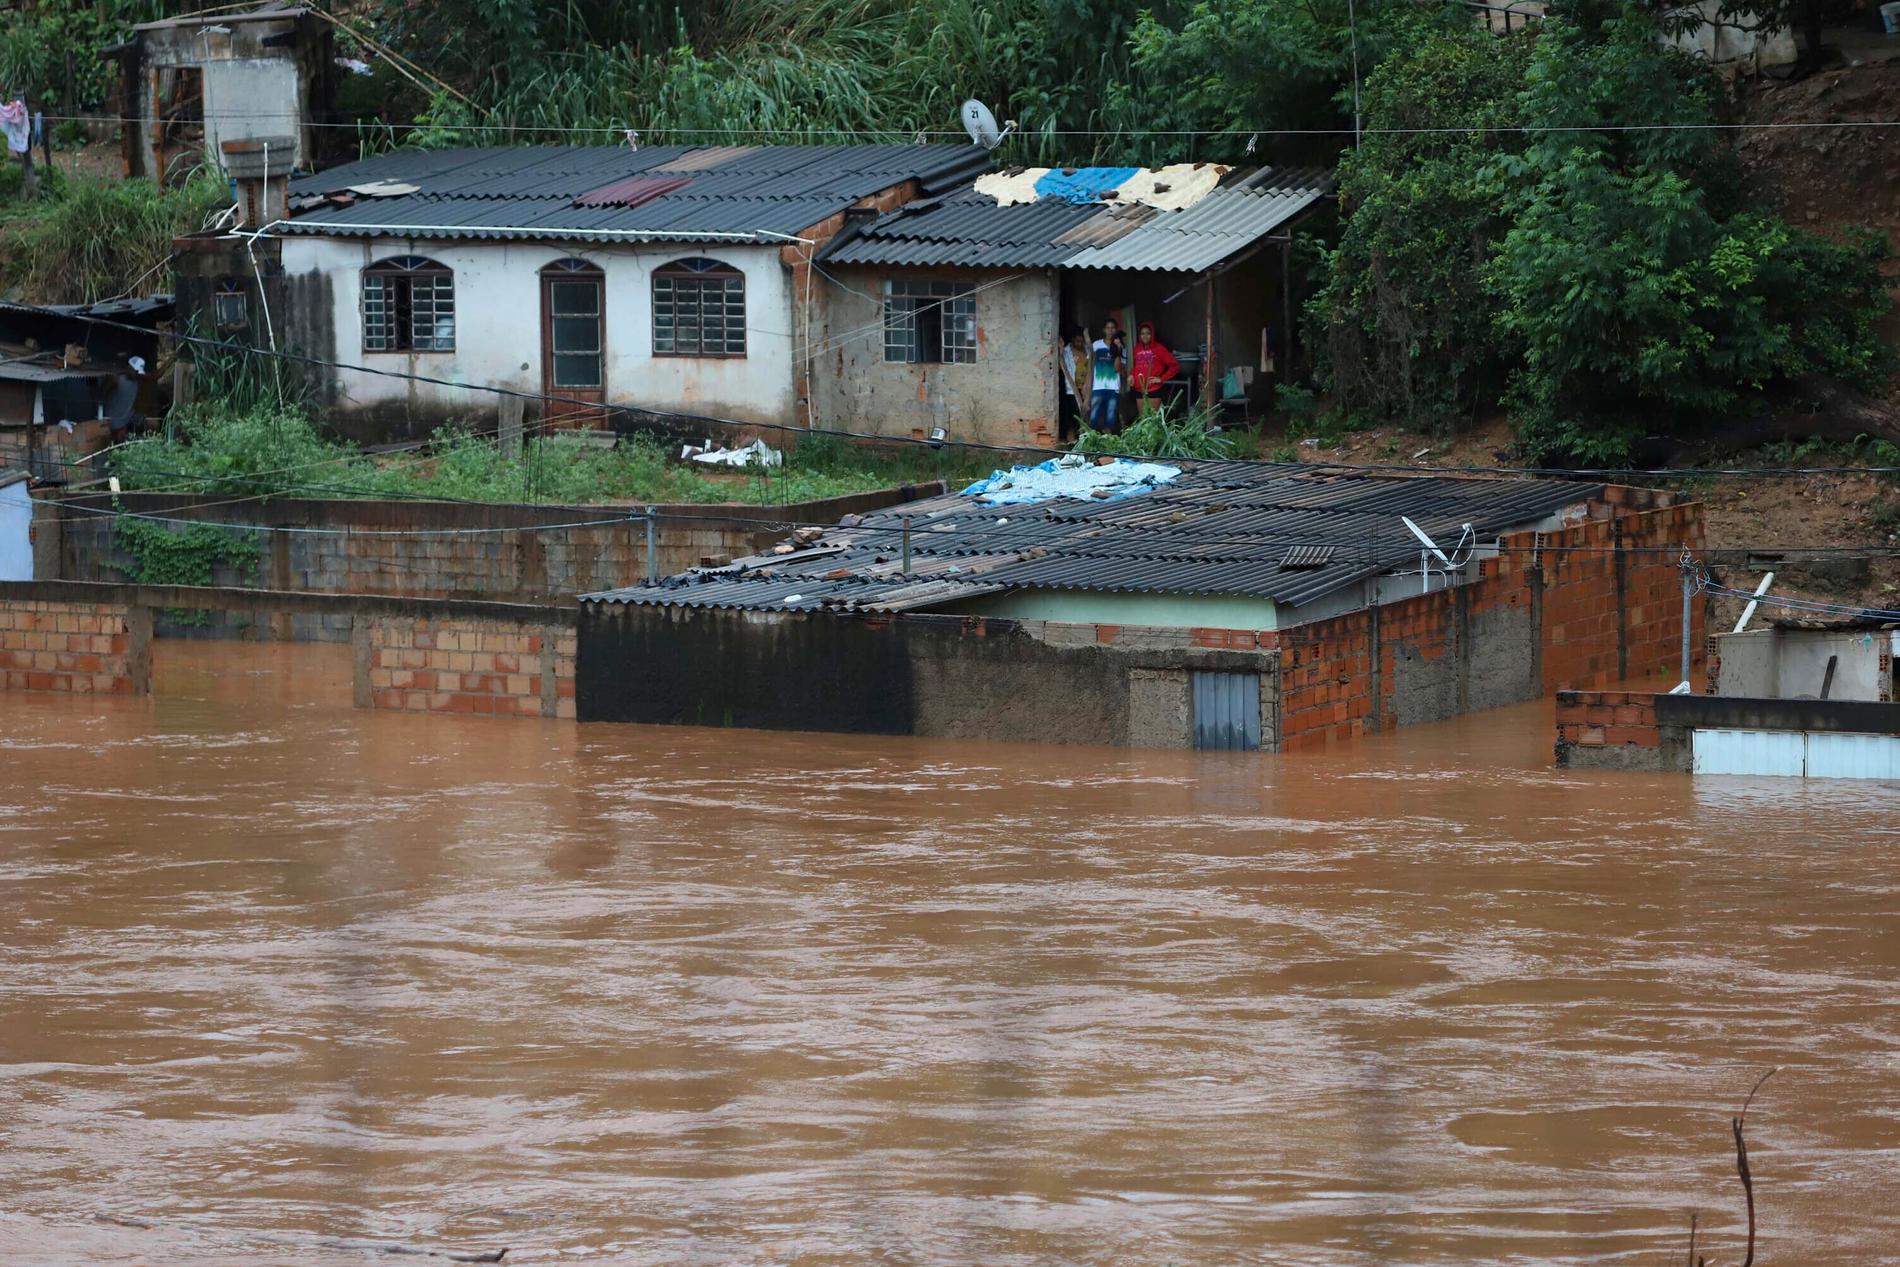 Ett hus som översvämmats i sydöstra Brasilien efter den senaste tidens svåra oväder.